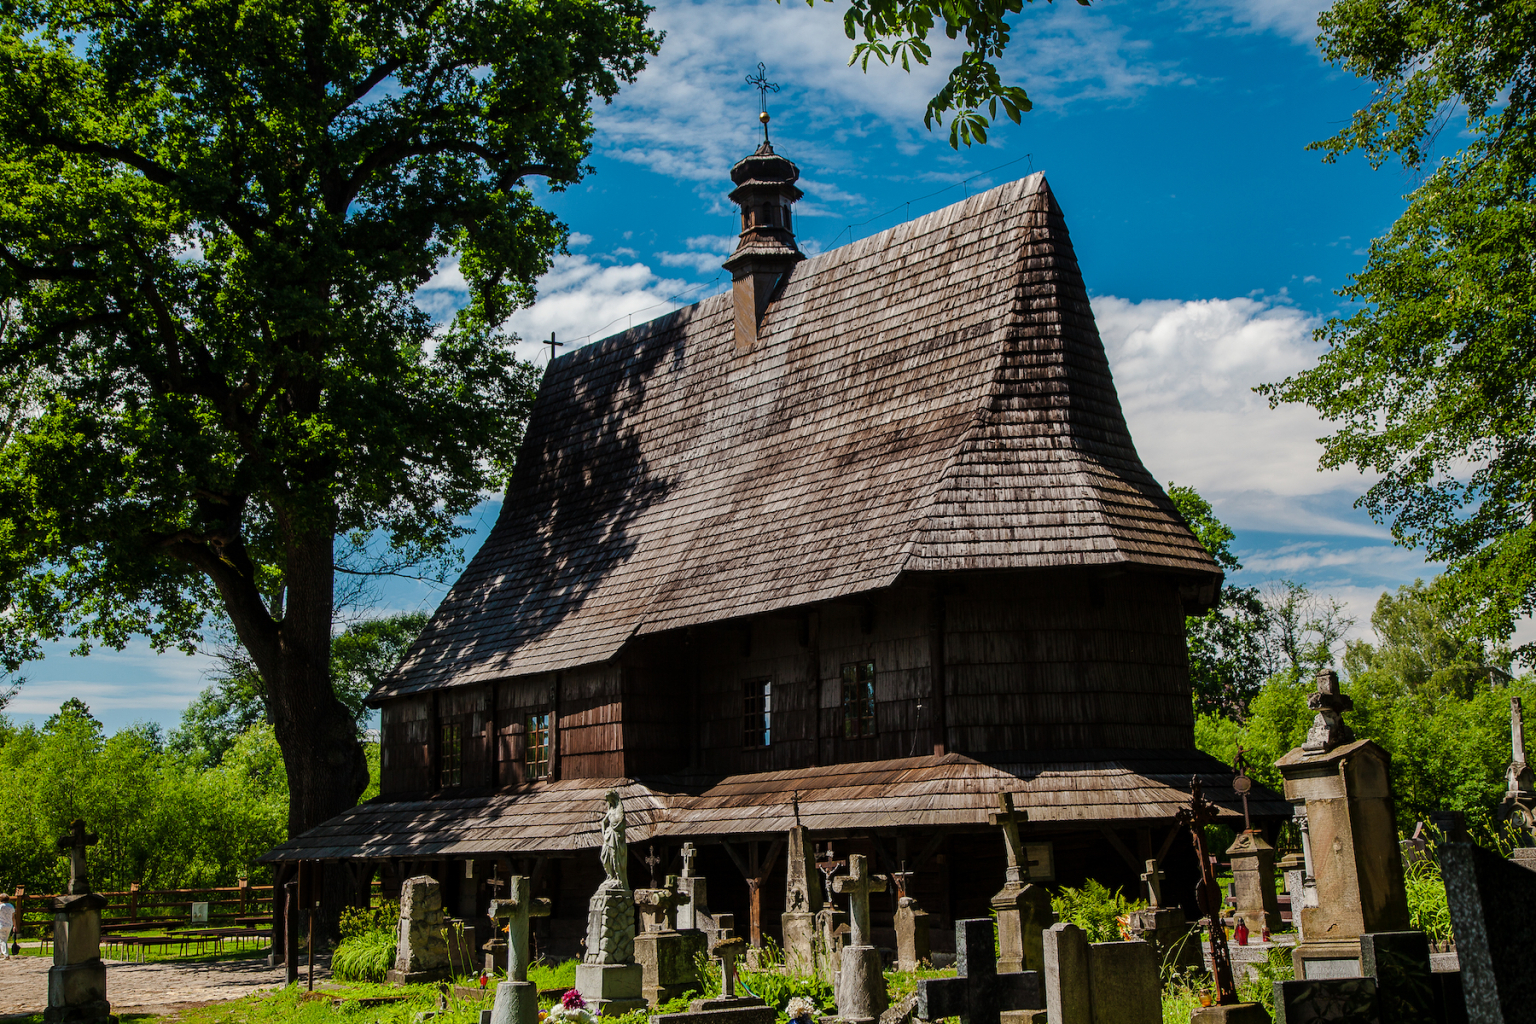 Chiesa di legno a Lipnica